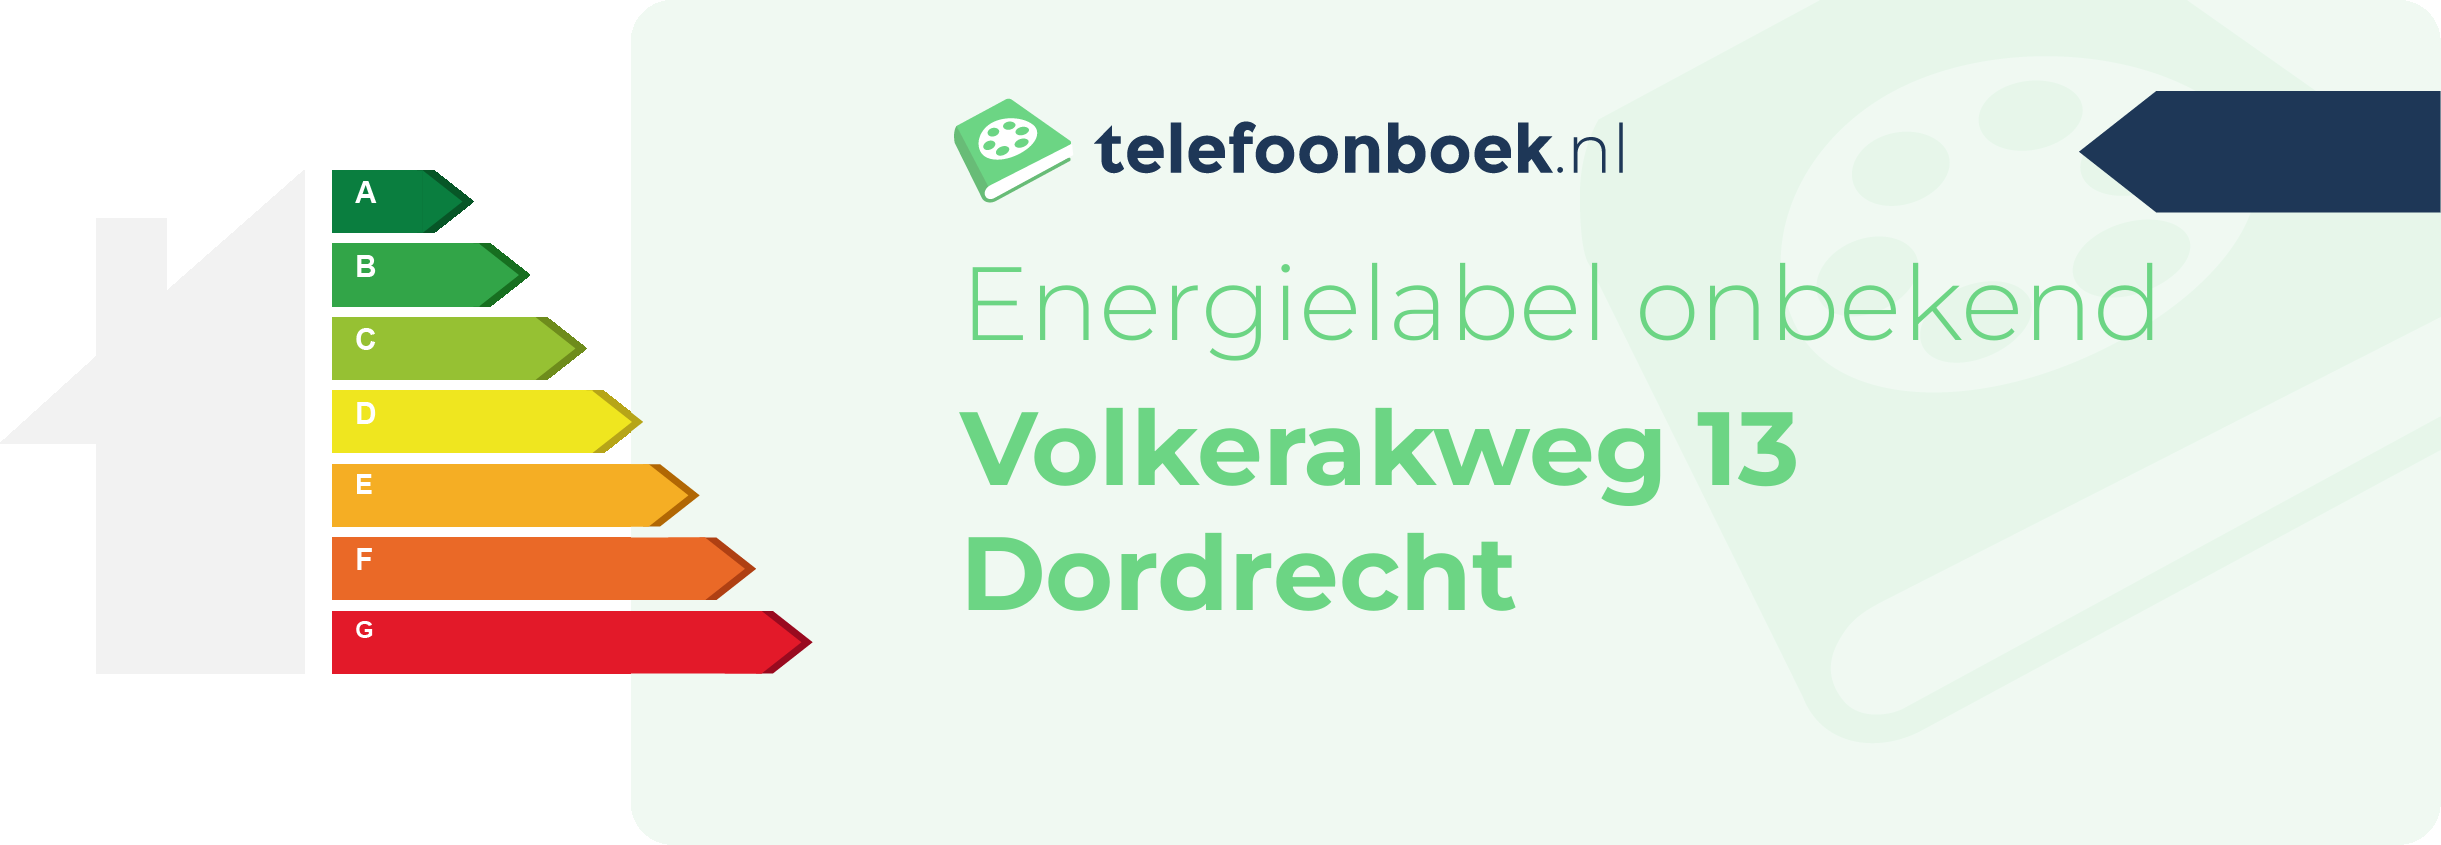 Energielabel Volkerakweg 13 Dordrecht